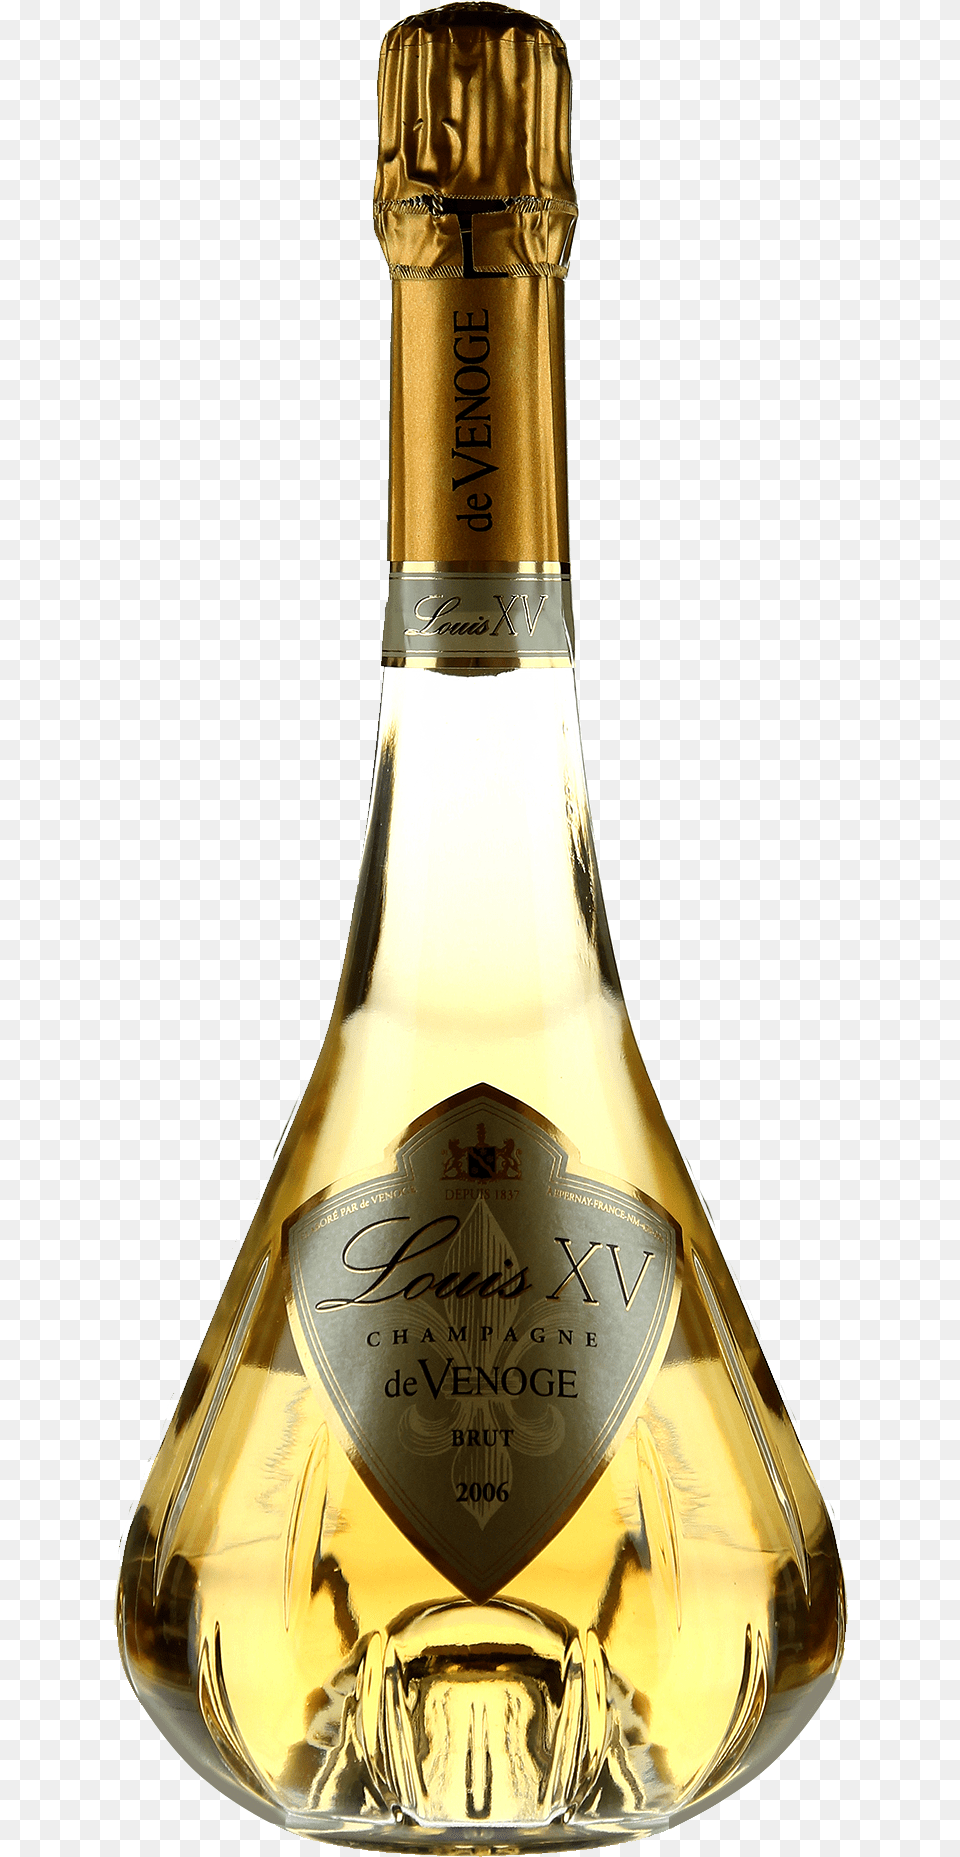 Champagne Louis Xv De Venoge Louis Xv 2008, Bottle, Alcohol, Beverage, Liquor Png